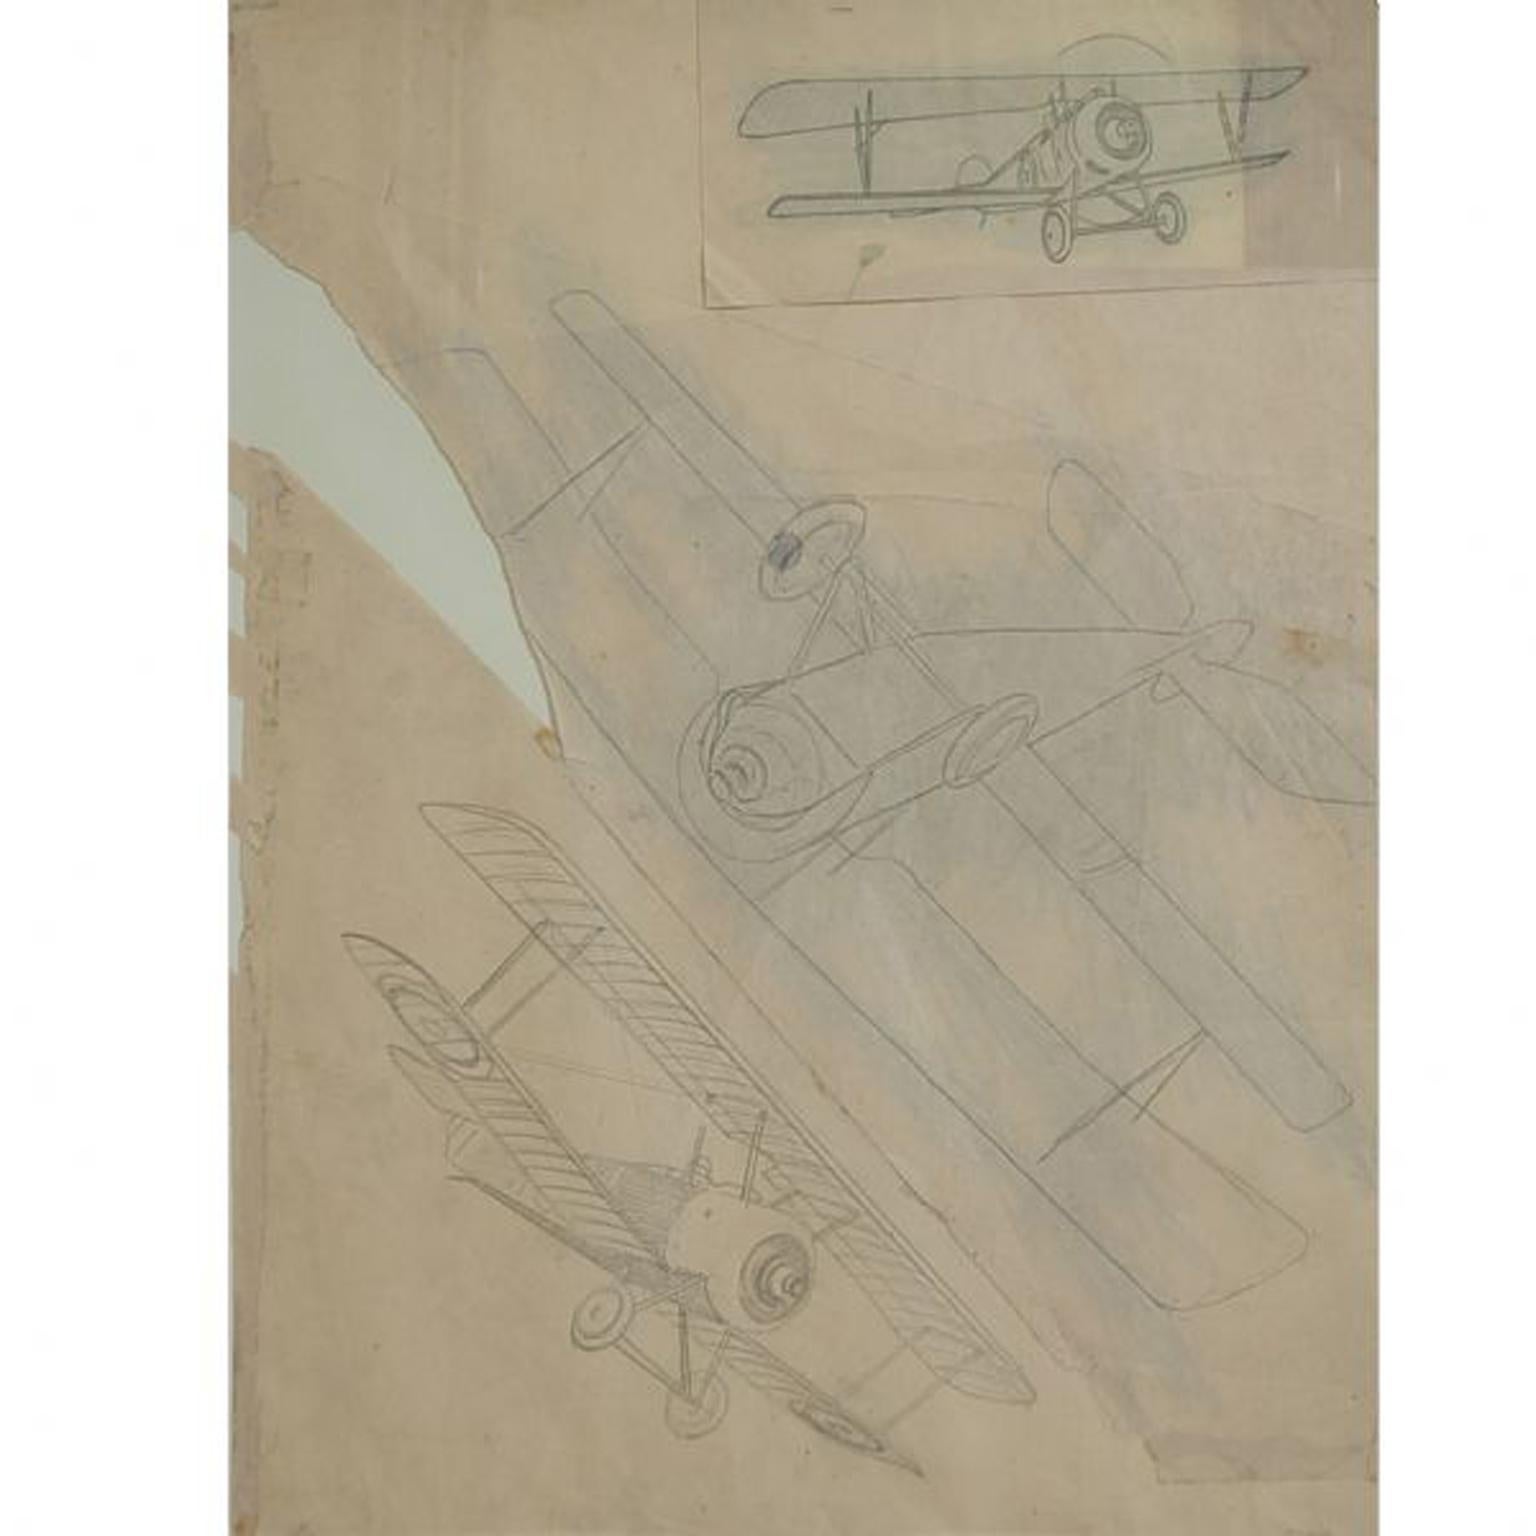 Dessin au crayon réalisé par Riccardo Cavigioli au début des années 1920 représentant trois avions biplans monoplaces. A droite= deux chasseurs biplans monoplaces Nieuport 11 Bebe de 1915. Gauche (bas) = avion de chasse biplan monoplace SPAD VII,